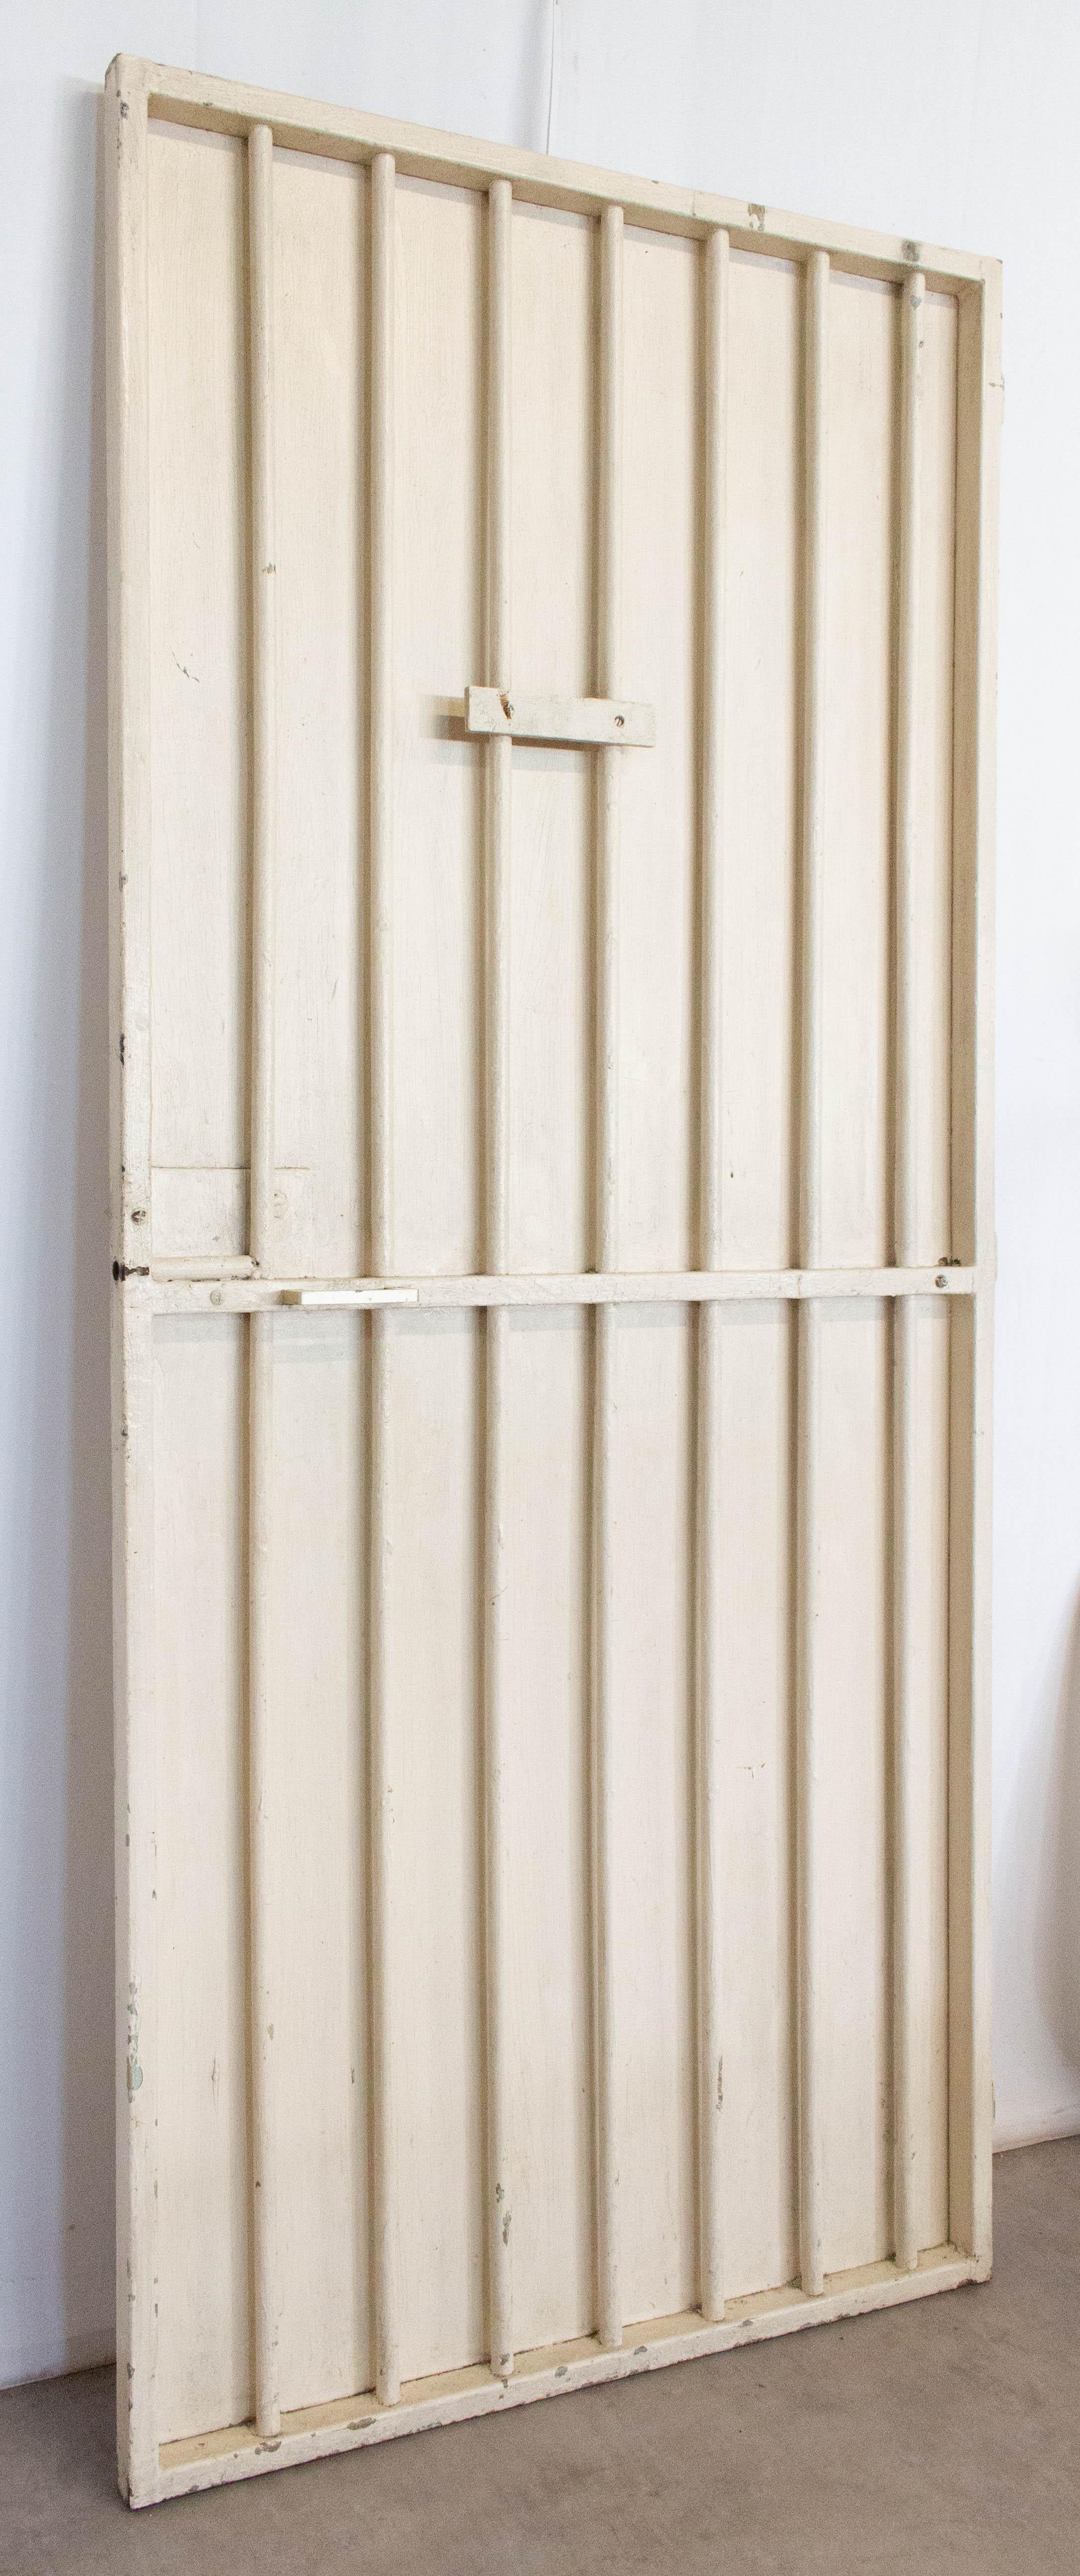 Französische Stahltür im industriellen Stil der Jahrhundertmitte
Authentische Tür des Gefängnisses von Mont de Marsan (südlich von Bordeaux): Tür des Besucherraums
Perfekt für die Einbindung in Design- und Bauprojekte
In Ordnung
Bitte sehen Sie auch